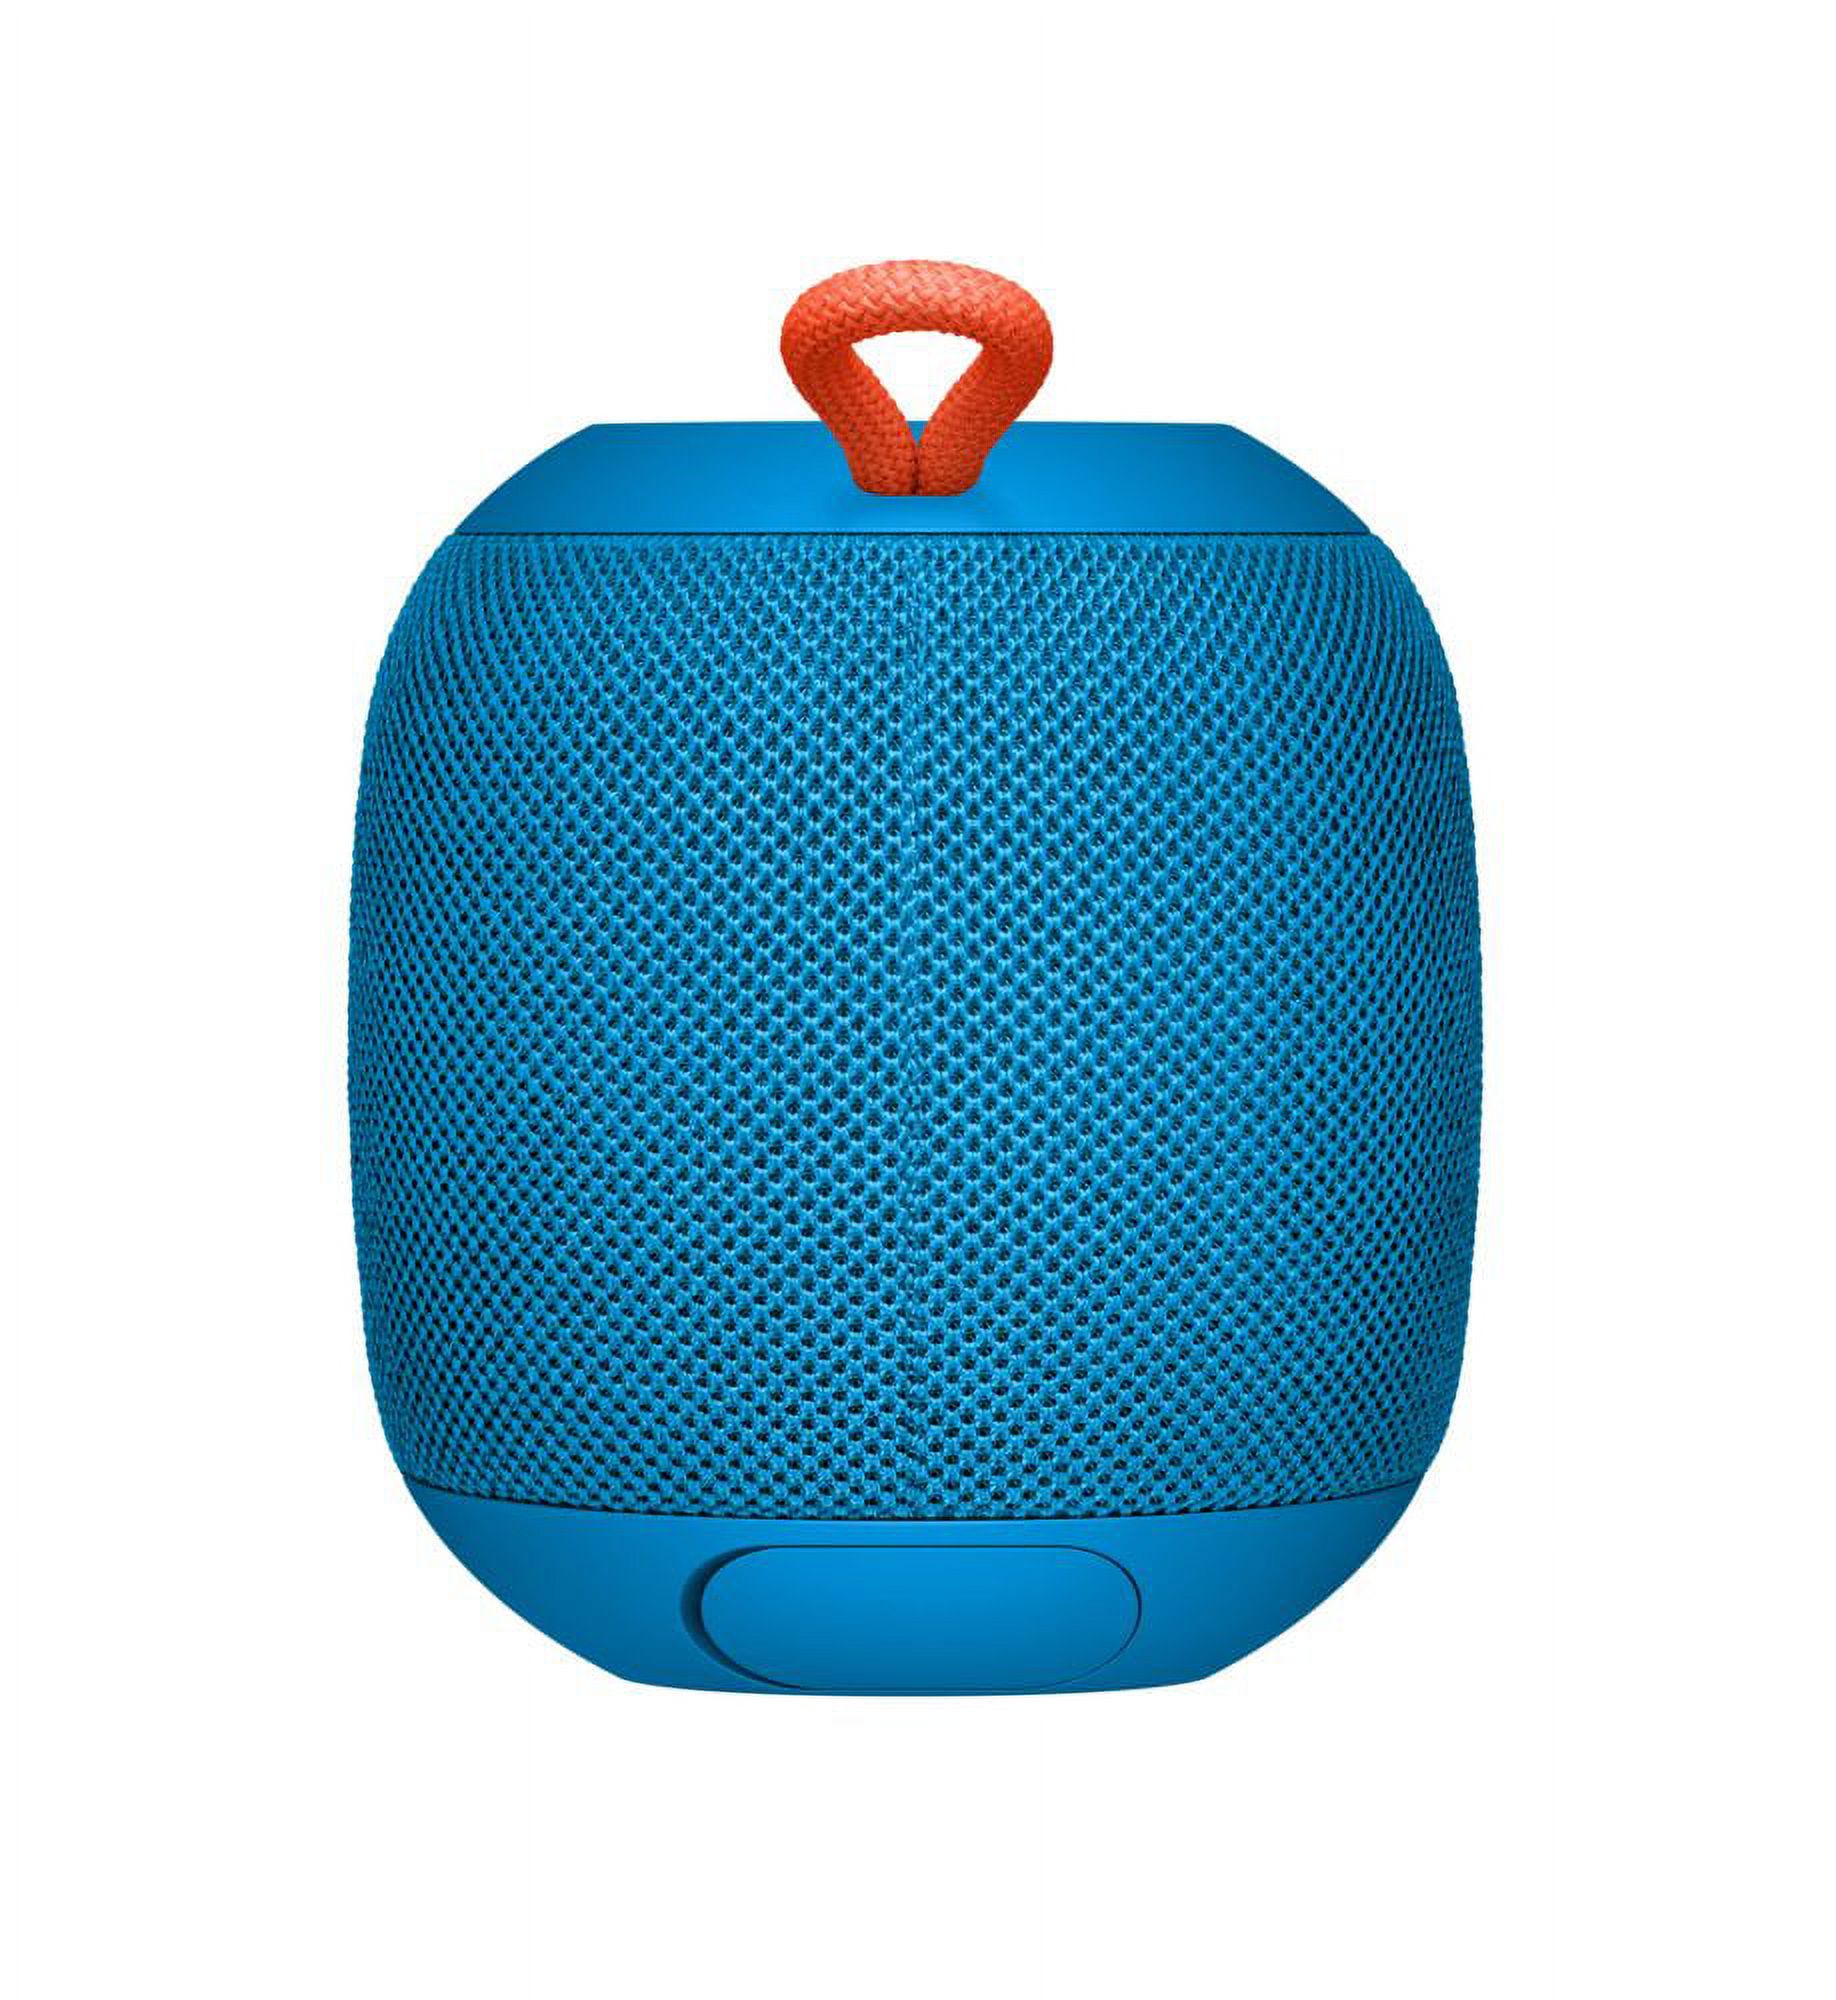 Ultimate Ears WONDERBOOM Portable Bluetooth Speaker Walmart Exclusive- Blue - image 3 of 10